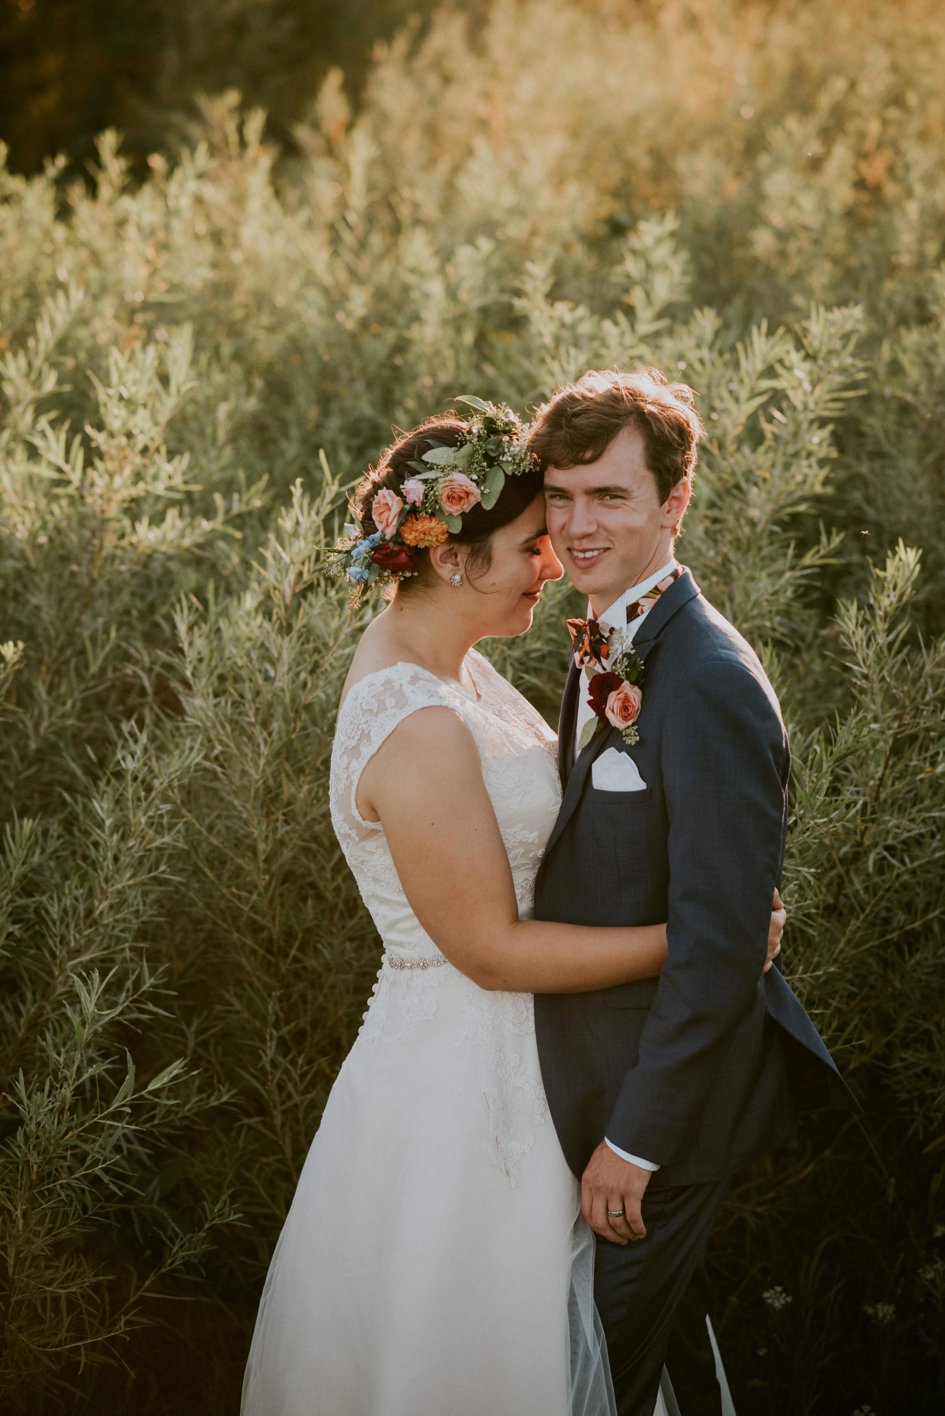 Emily + Tim: Rose Hued Wedding at Lake Geneva